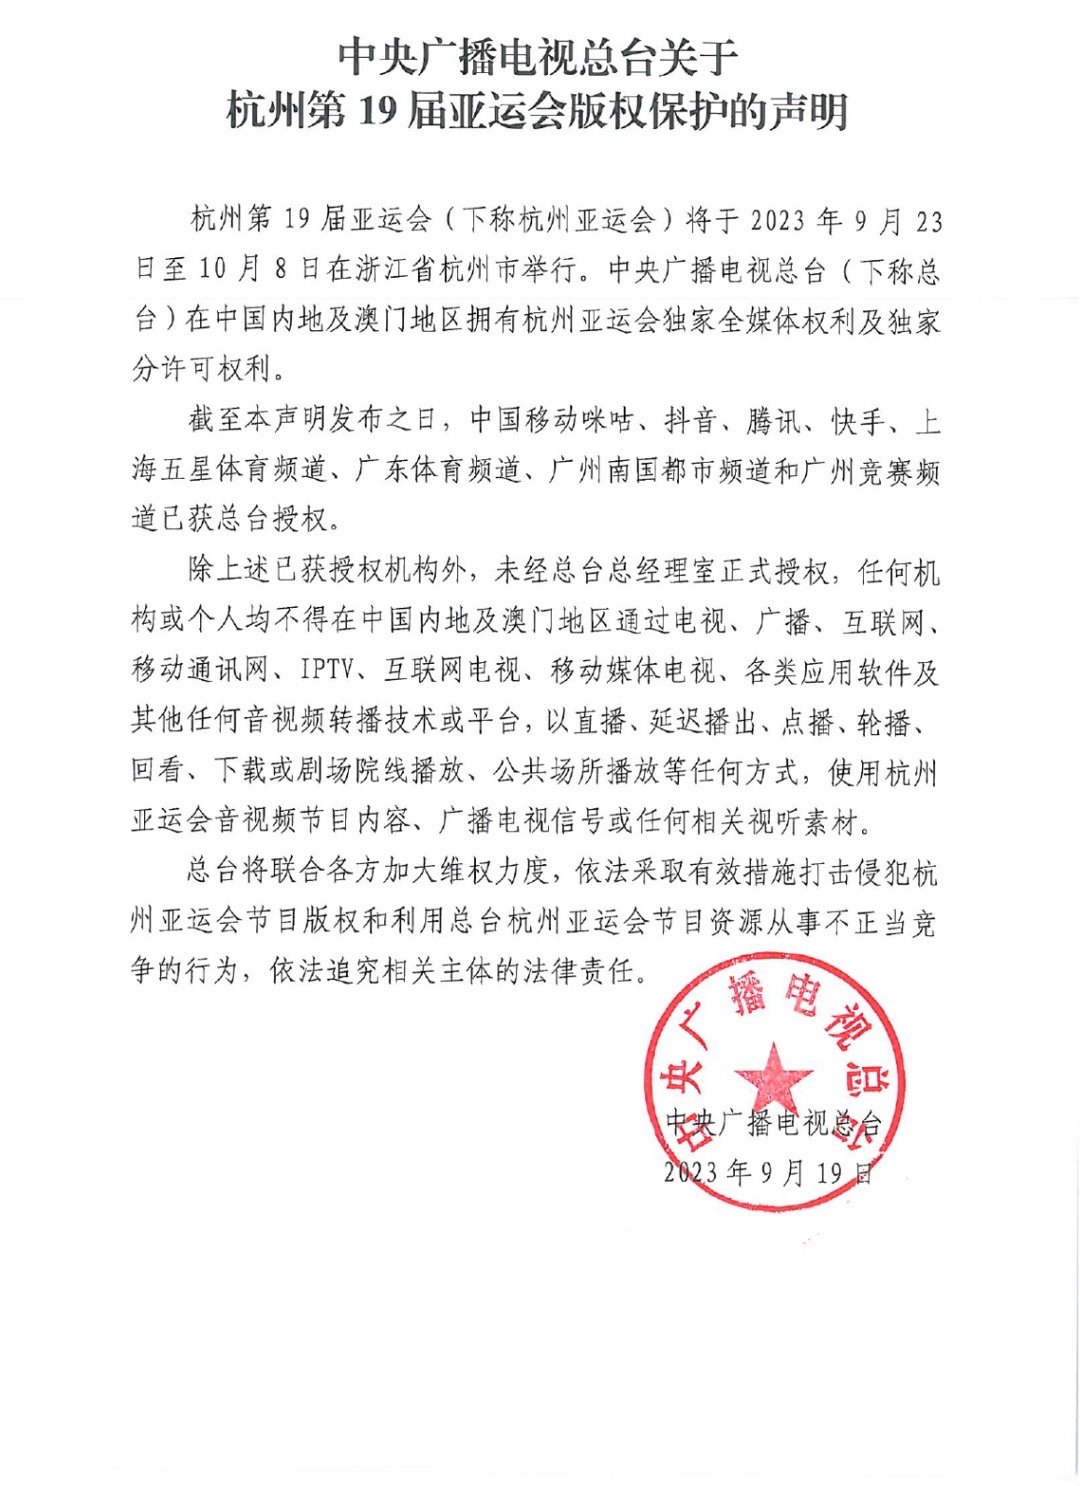 中央广播电视总台发布杭州第19届亚运会版权保护声明